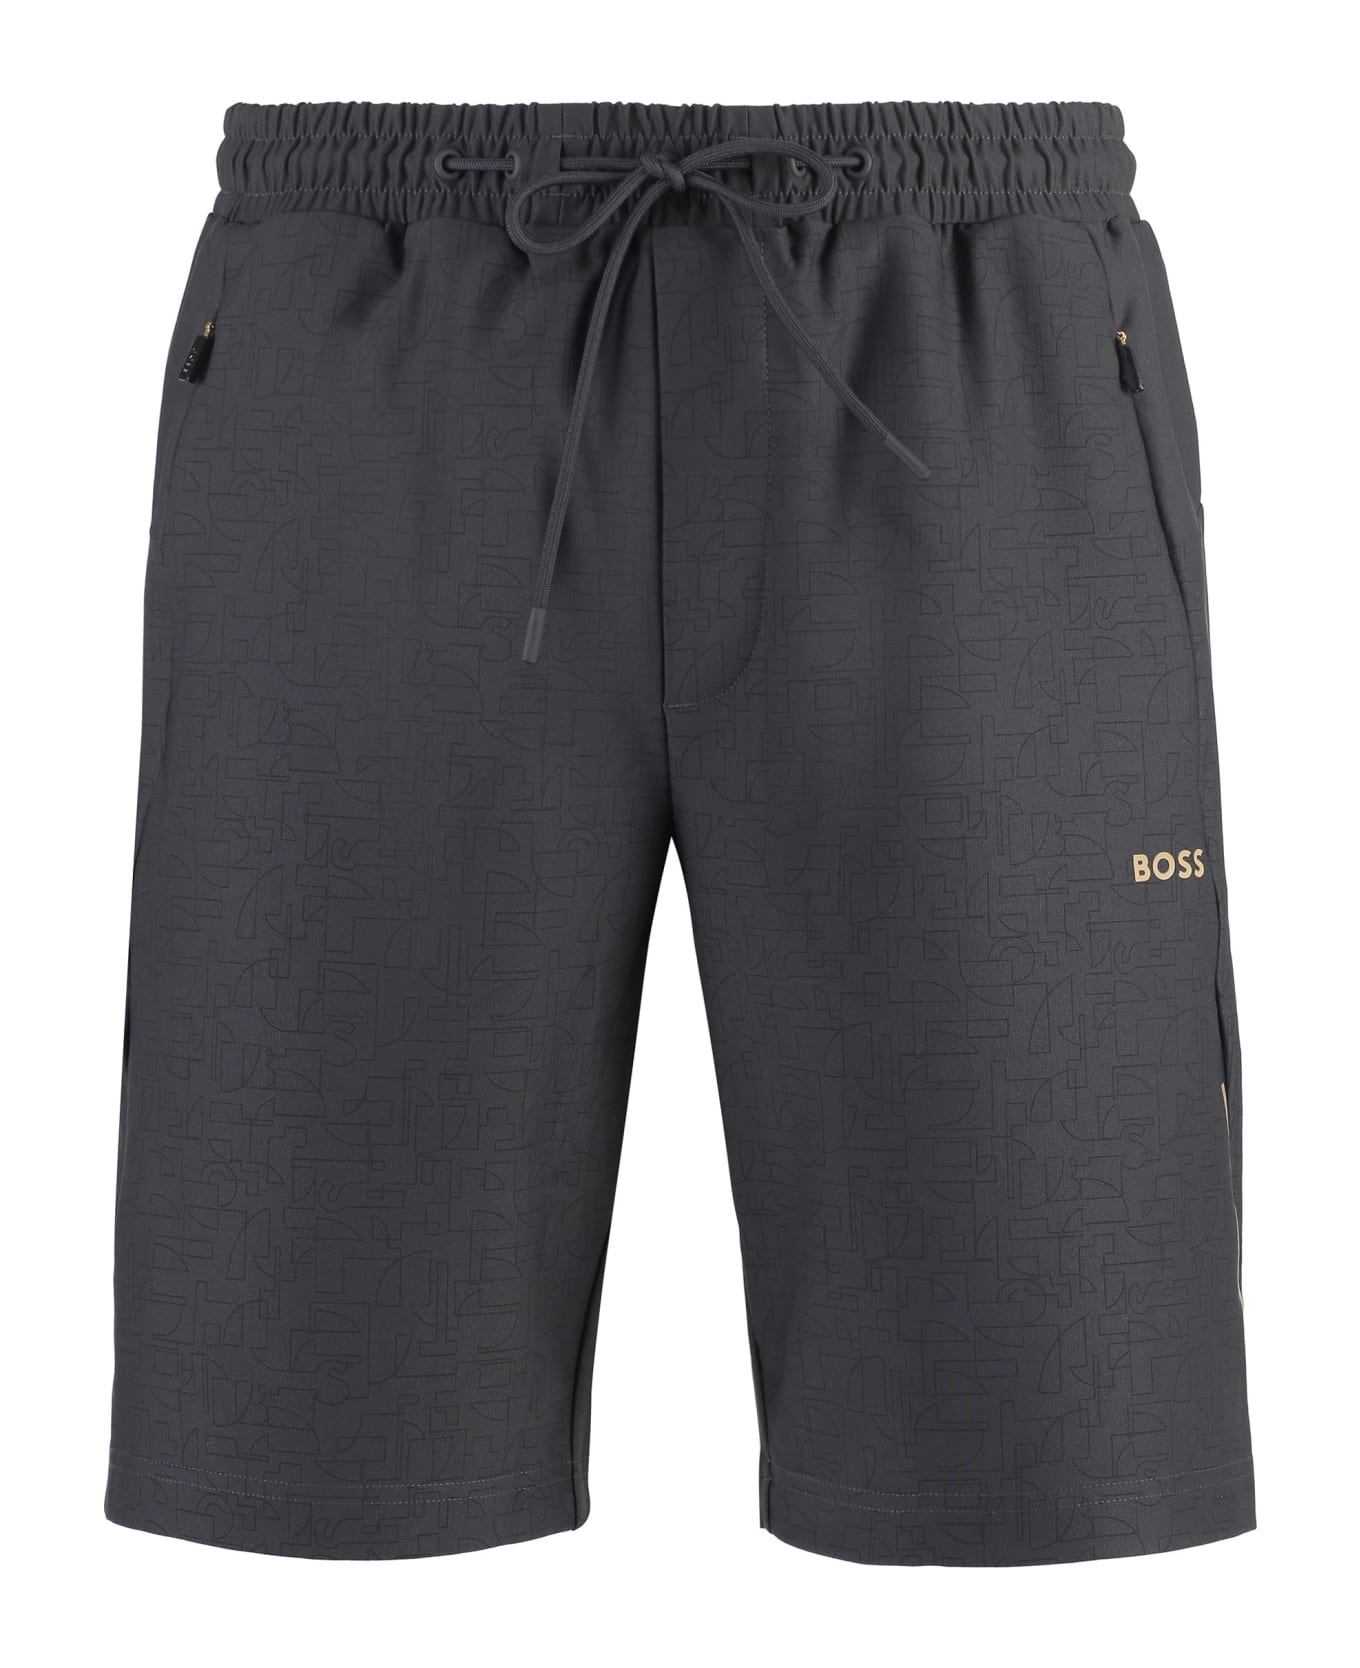 Hugo Boss Hecon Techno Fabric Bermuda-shorts - grey ショートパンツ